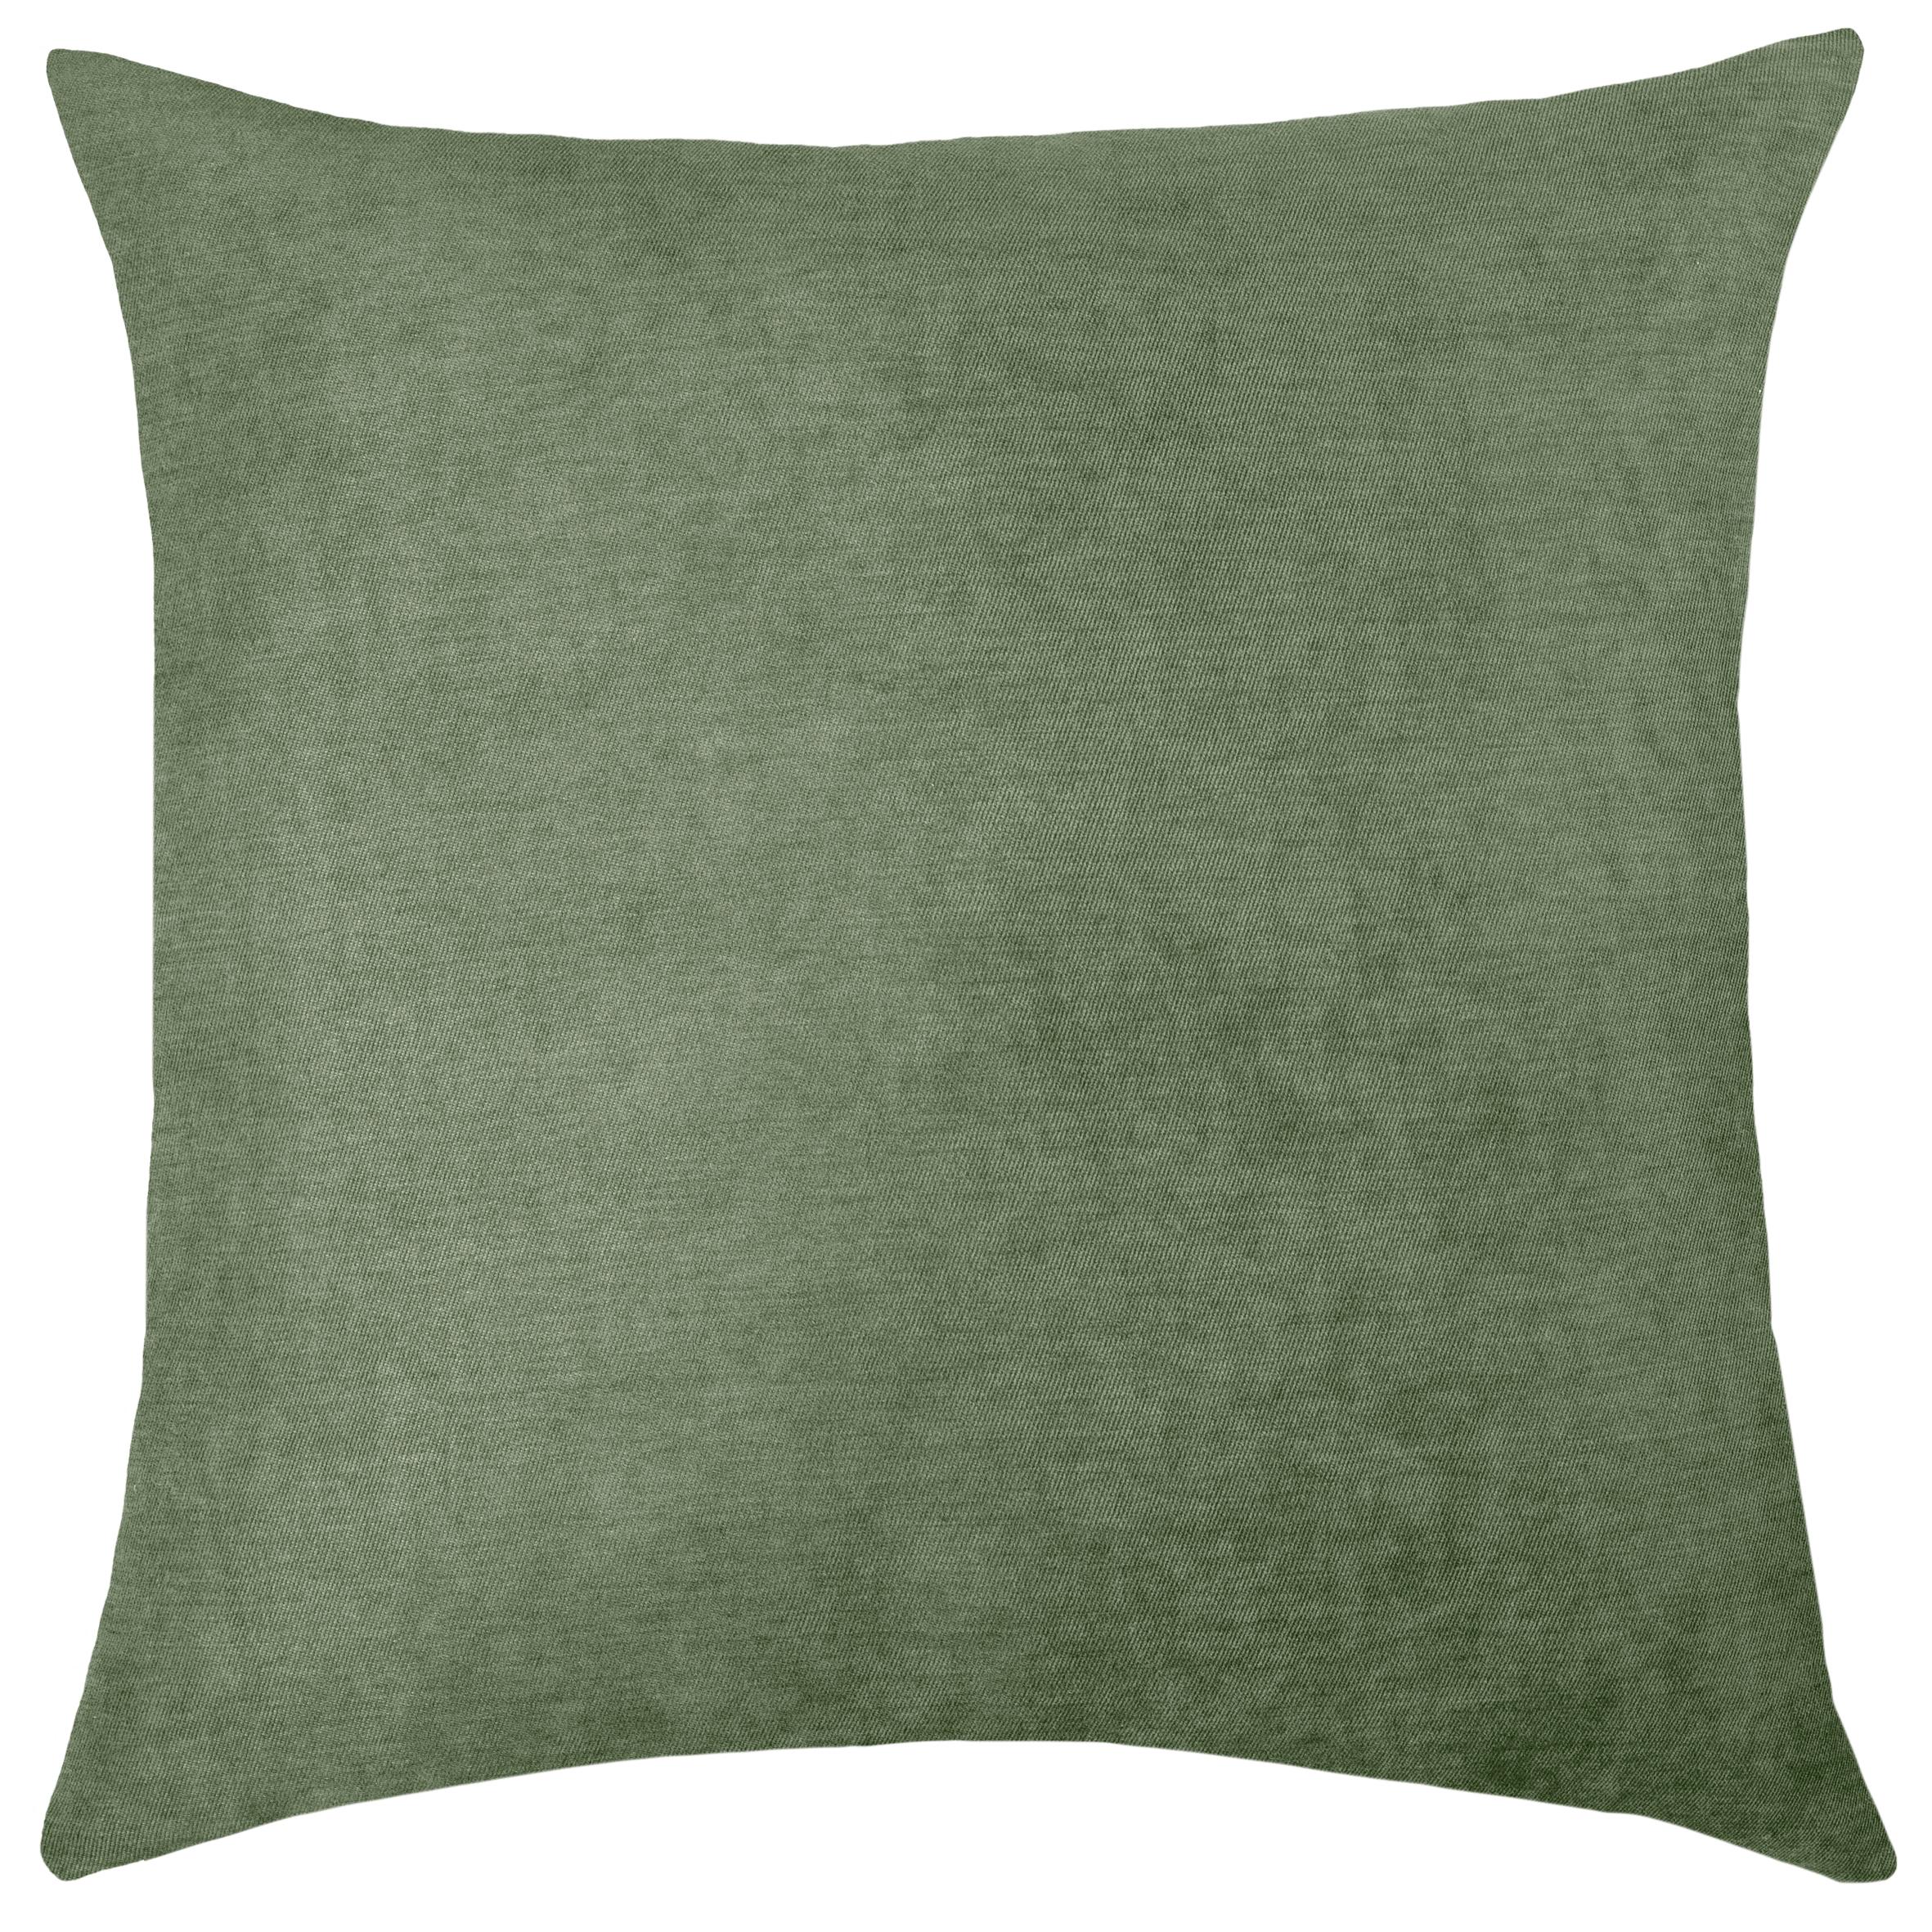 Dekorační Polštář Nizza, Olivově Zelená 45x45cm - olivově zelená, textil (45/45cm) - Modern Living